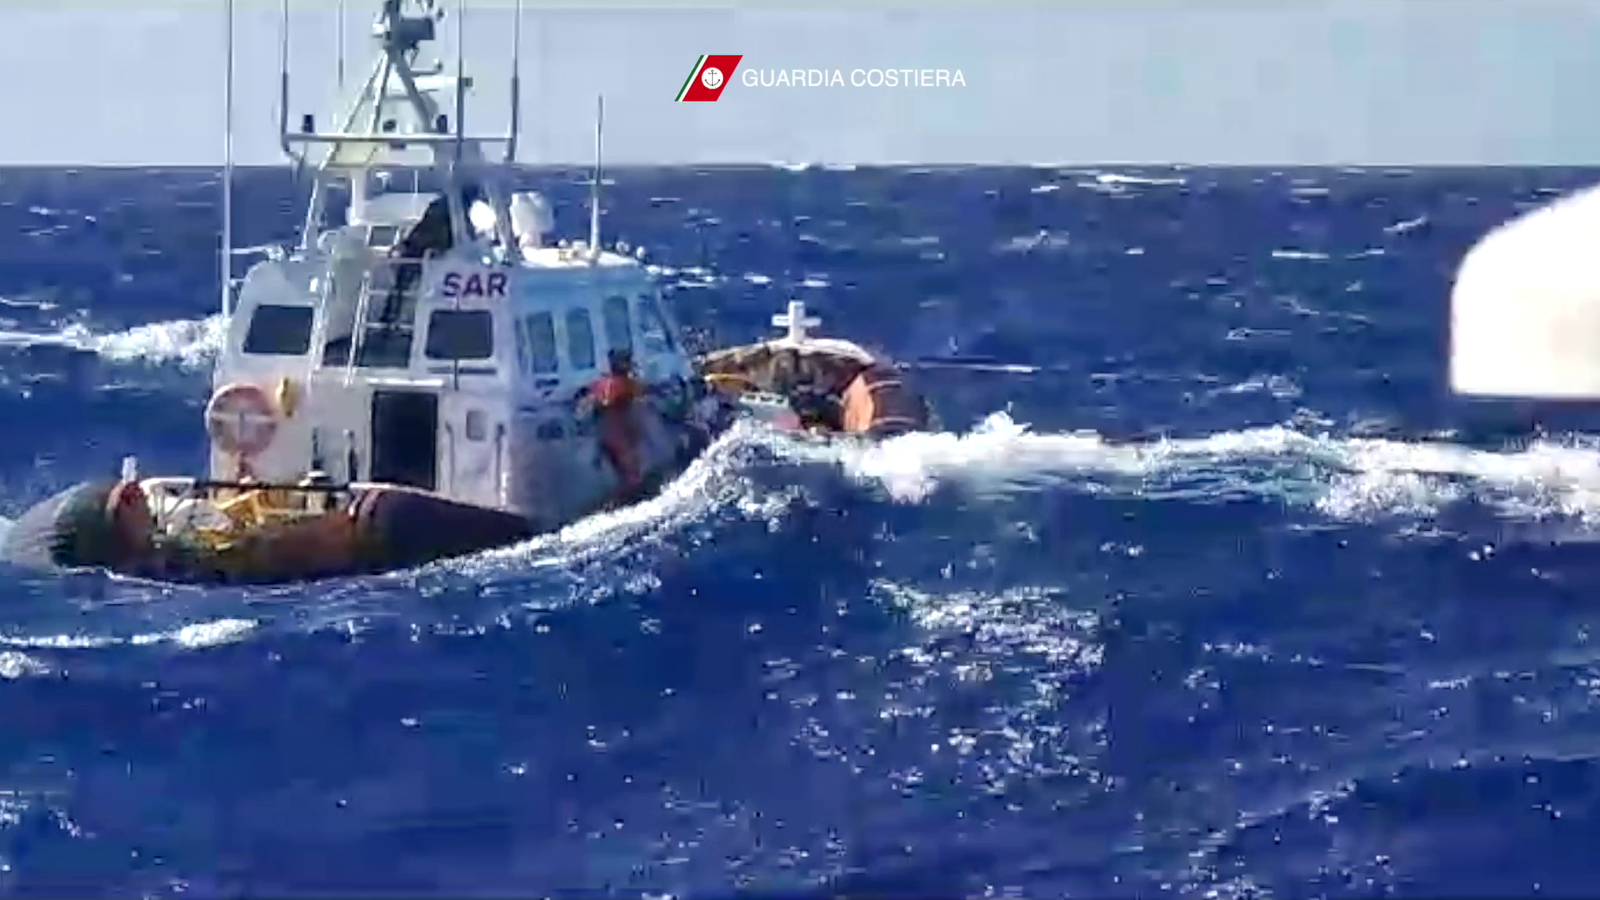 Драматично видео показва спасяване на хора в Средиземно море - докато майка и дете умират при корабокрушение